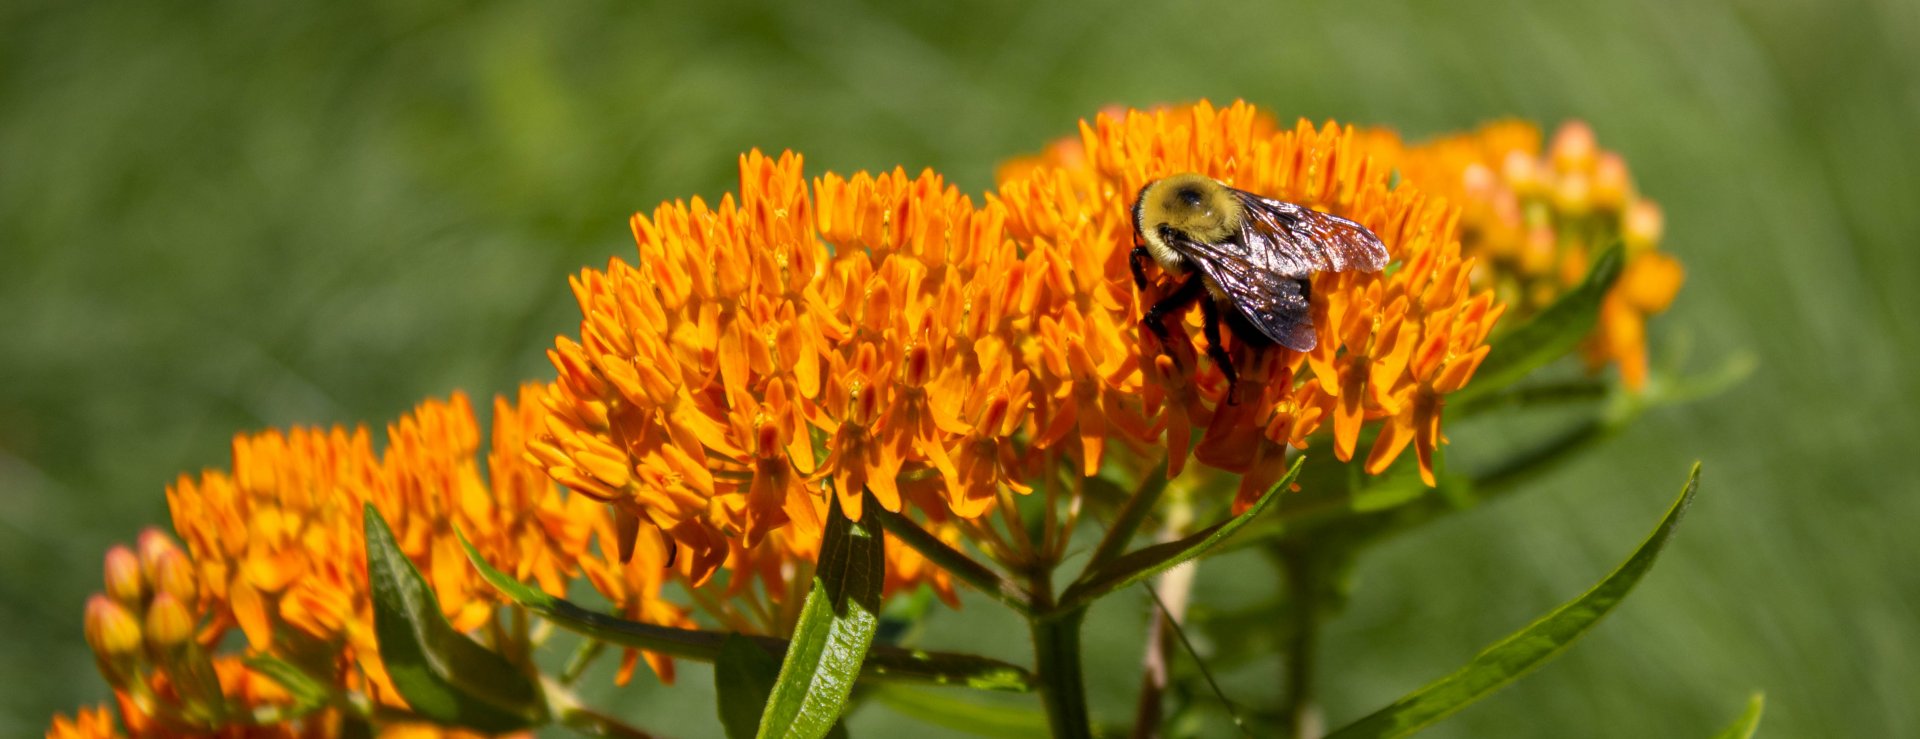 Bumblebee on asclepias tuberosa.